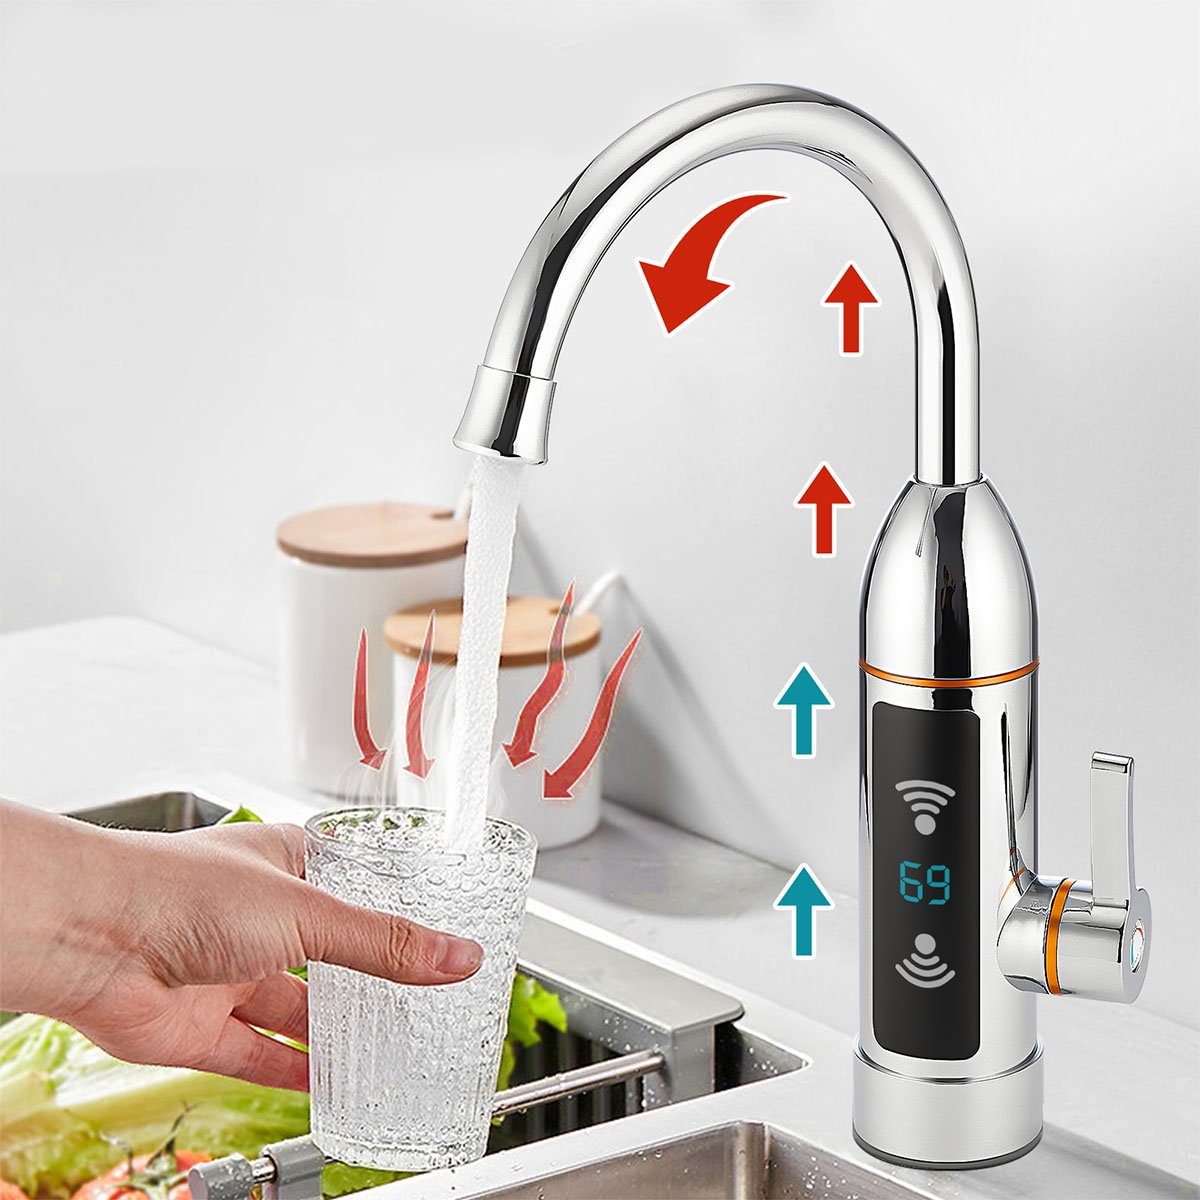 oyajia Küchenarmatur Küchenarmatur 3KW Elektrischer Wasserhahn,LED  Digitalanzeige,Edelstahl Heizung Küche Durchlauferhitzer Sofort Warm Armatur